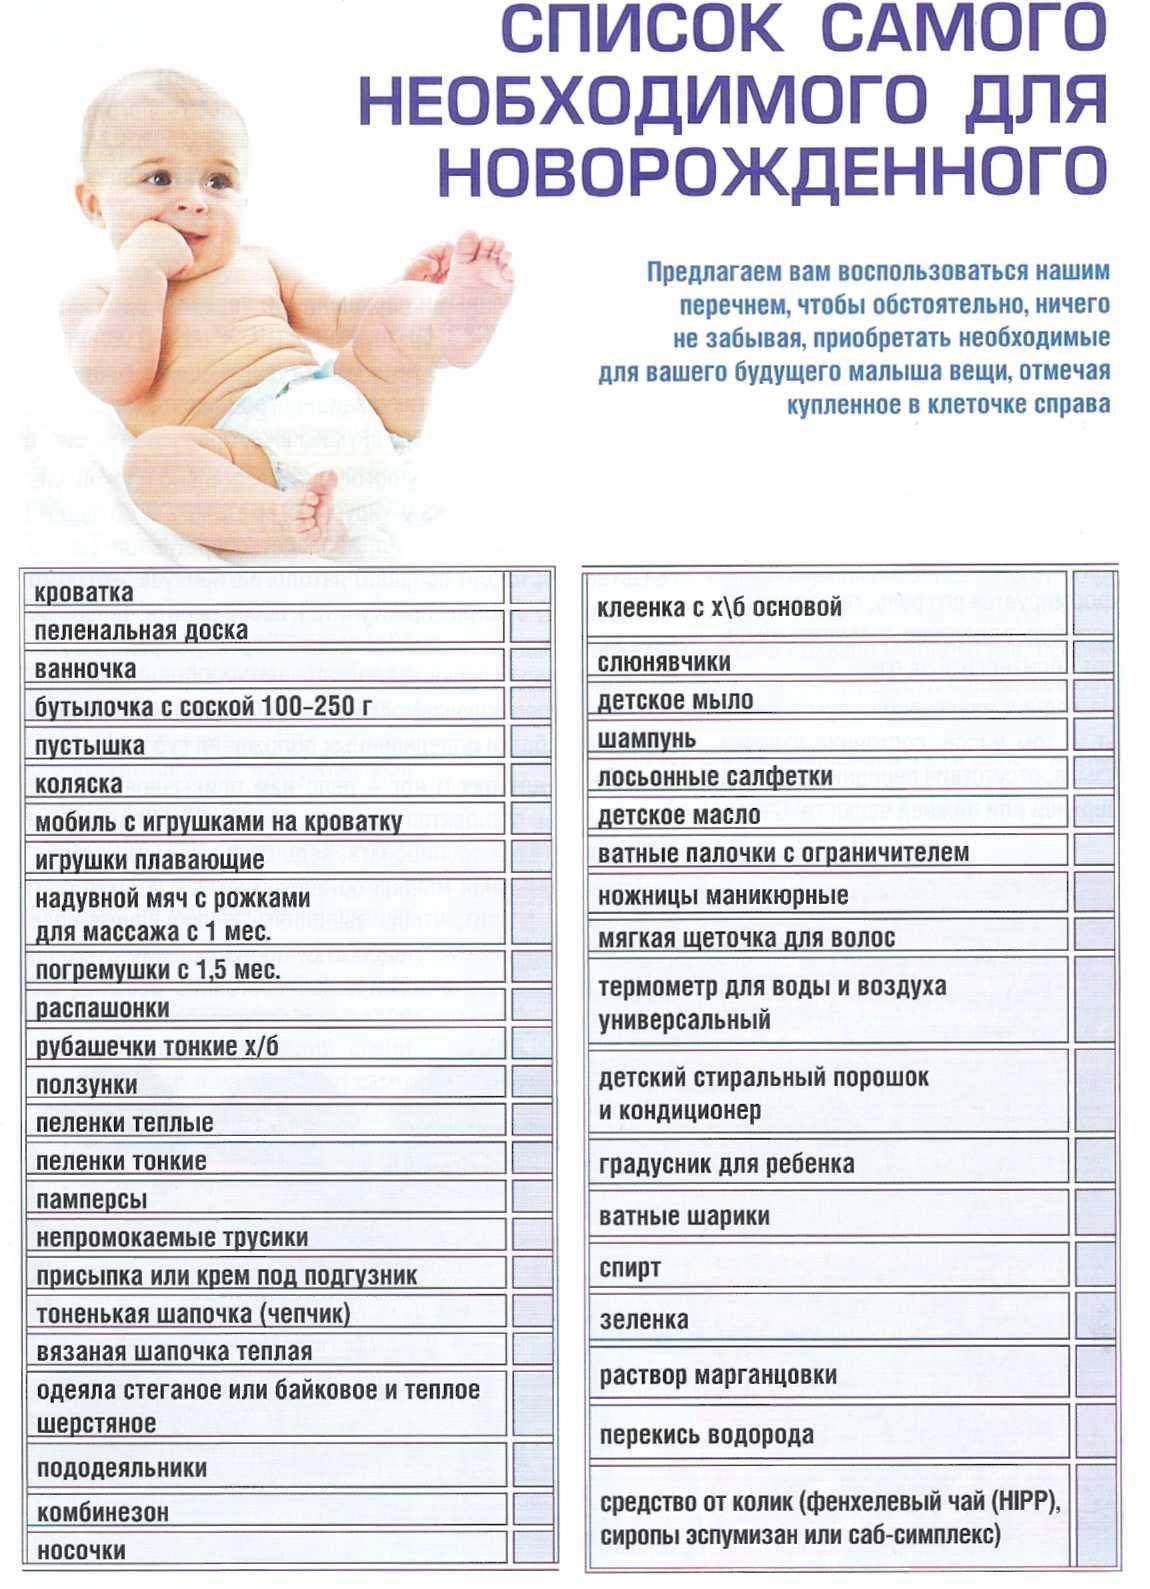 Вещи для новорожденного на первое время (список)